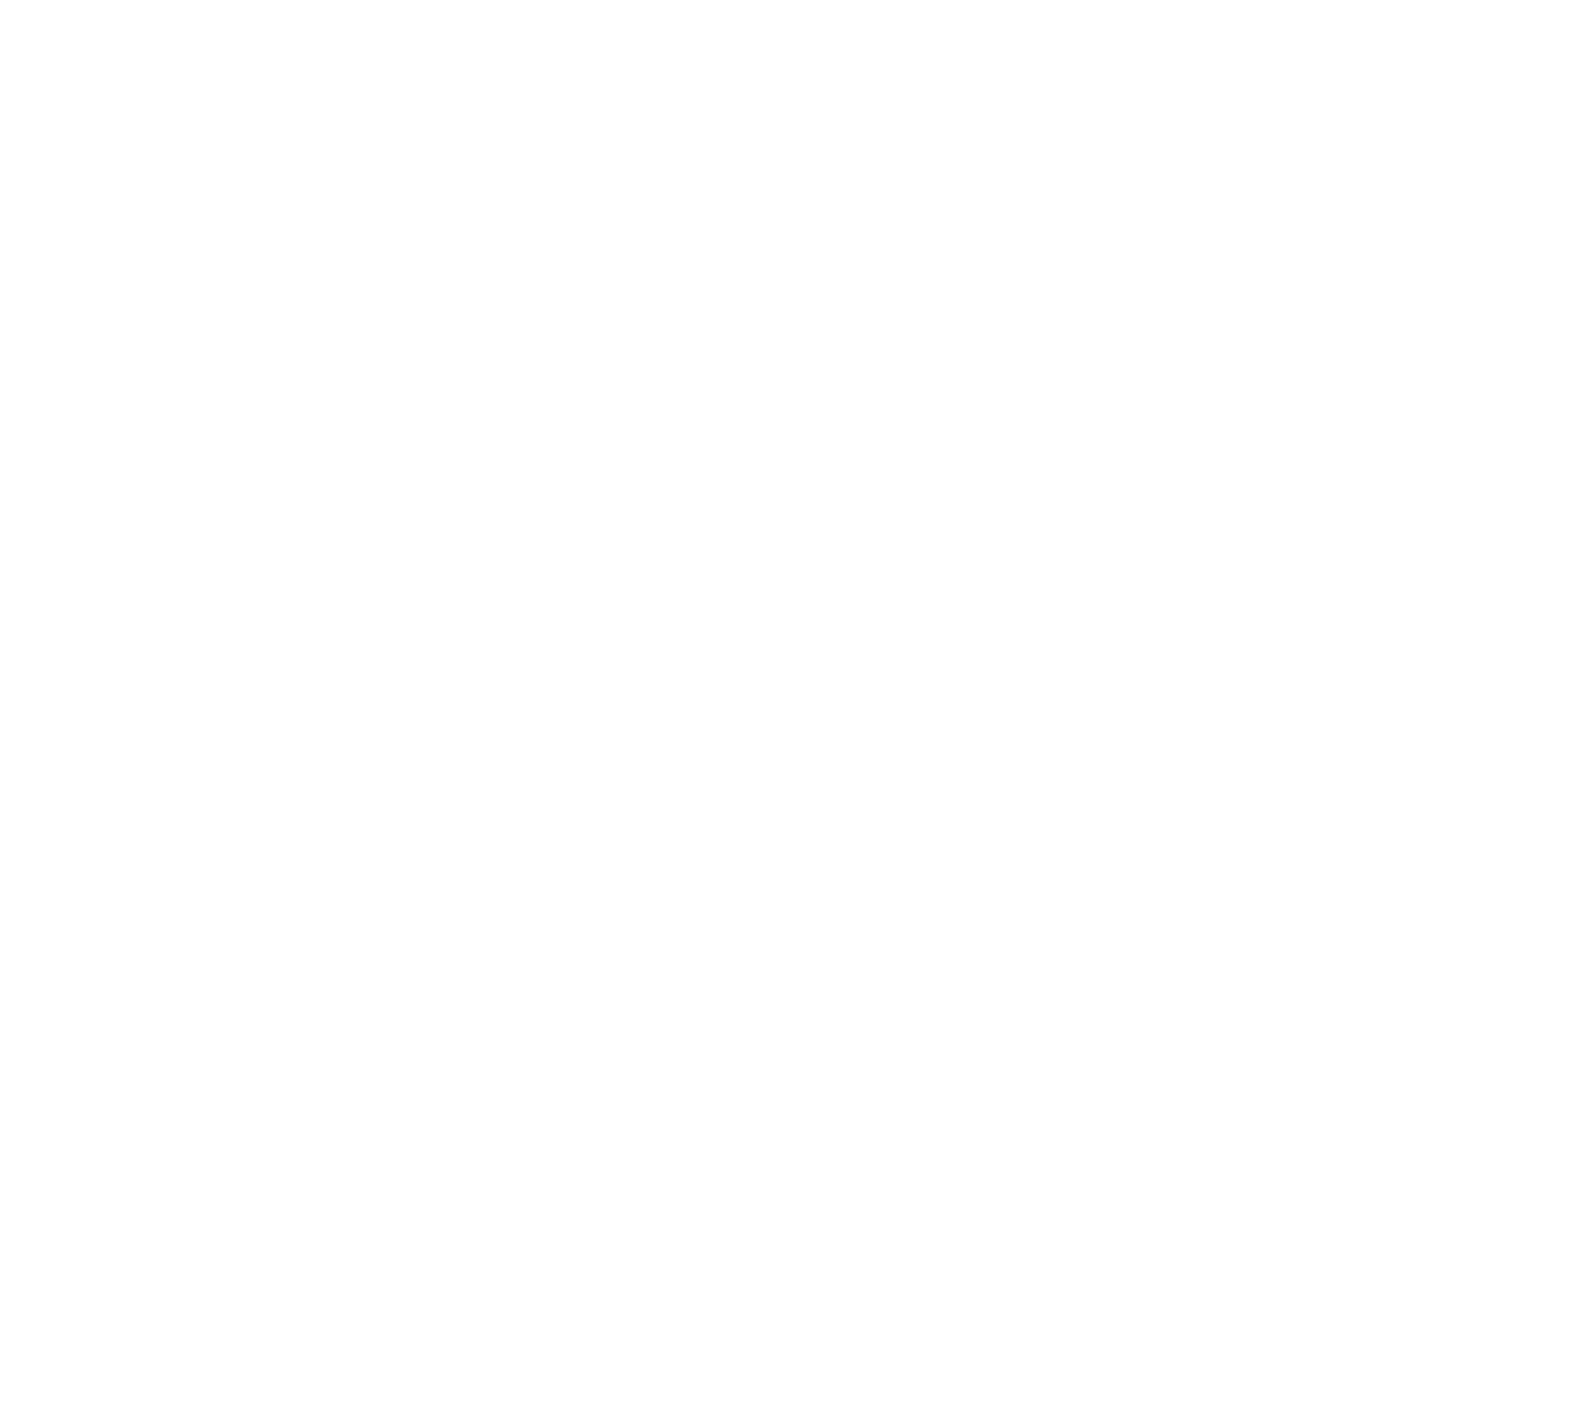 News Corp logo pour fonds sombres (PNG transparent)